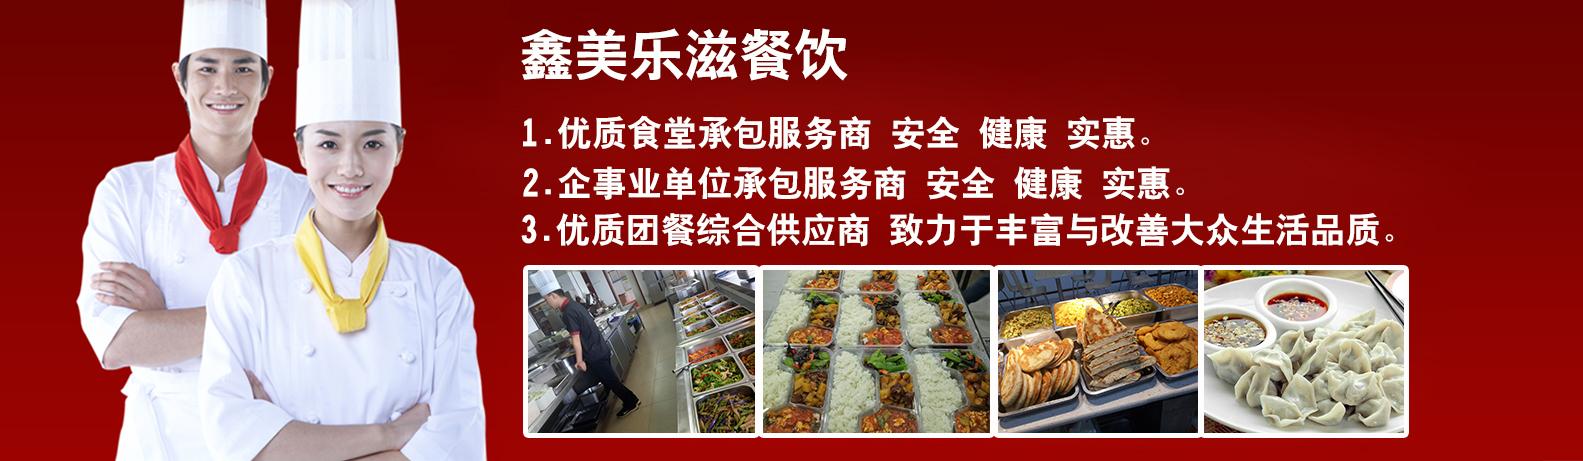 西安鑫美乐滋餐饮管理主营业务是为机关团体.企业单位.学校.